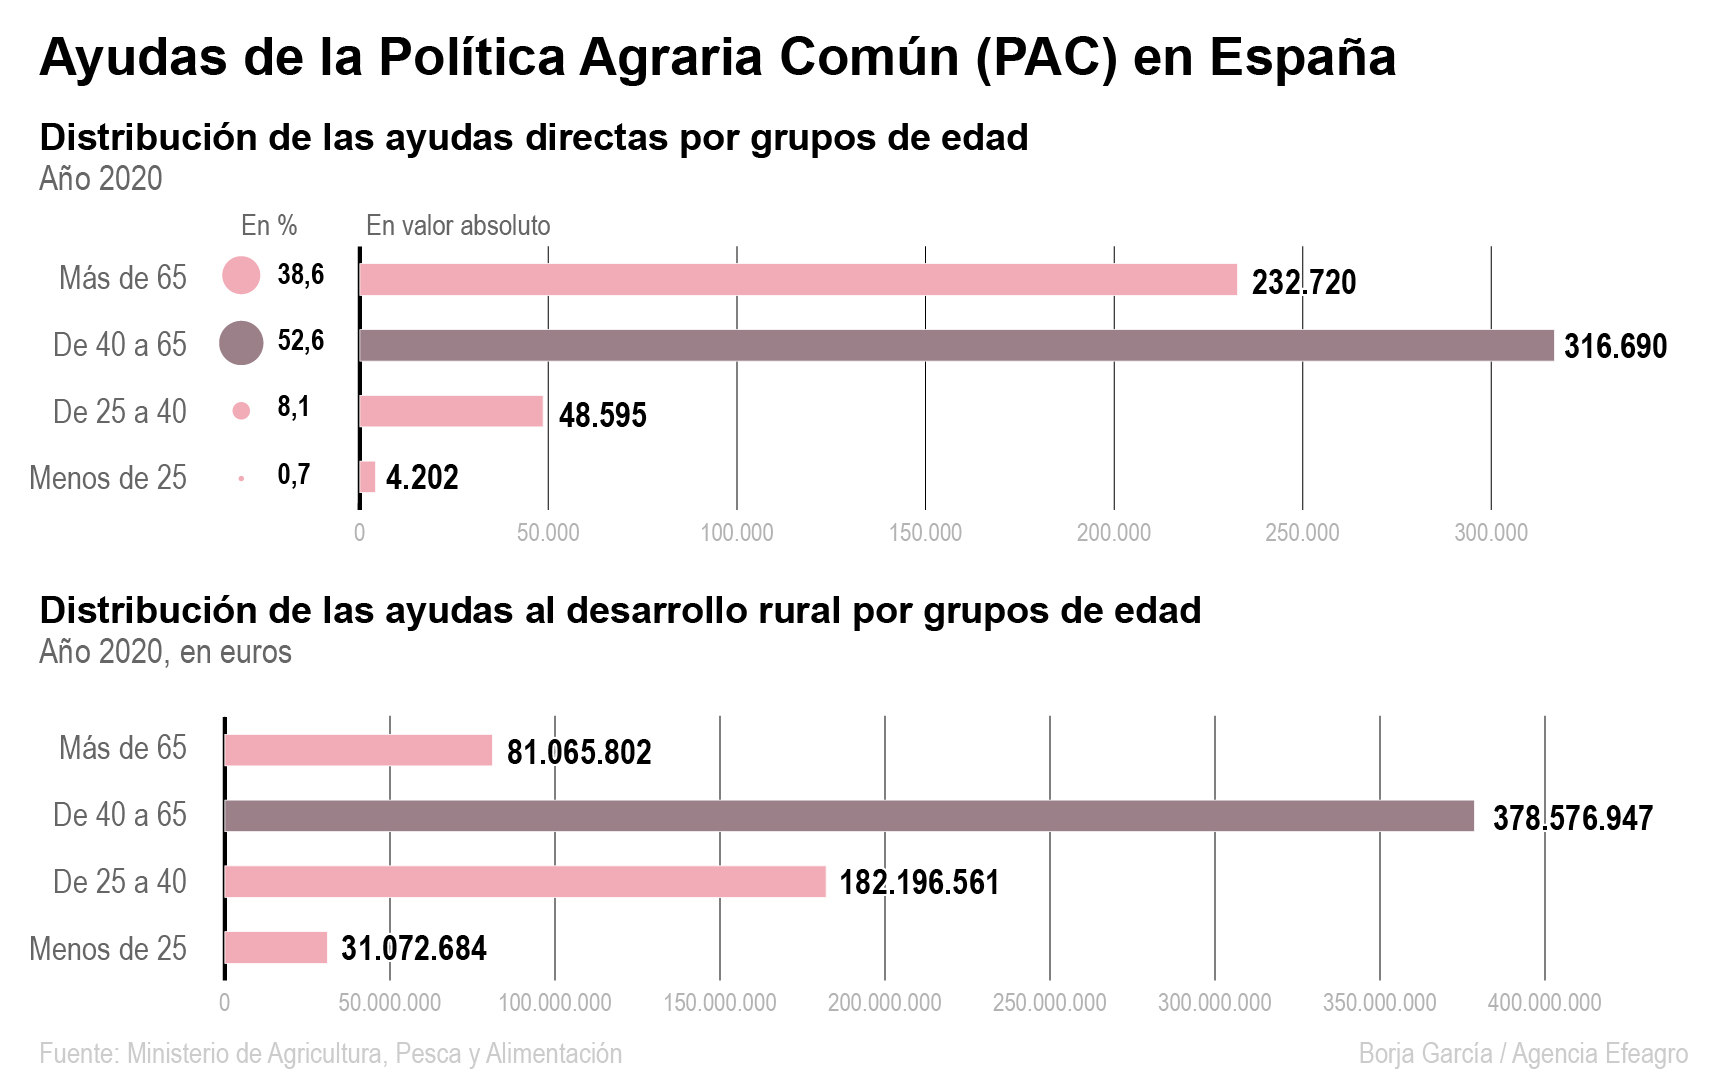 Reparto de ayudas de la PAC en España. Efeagro/Borja García